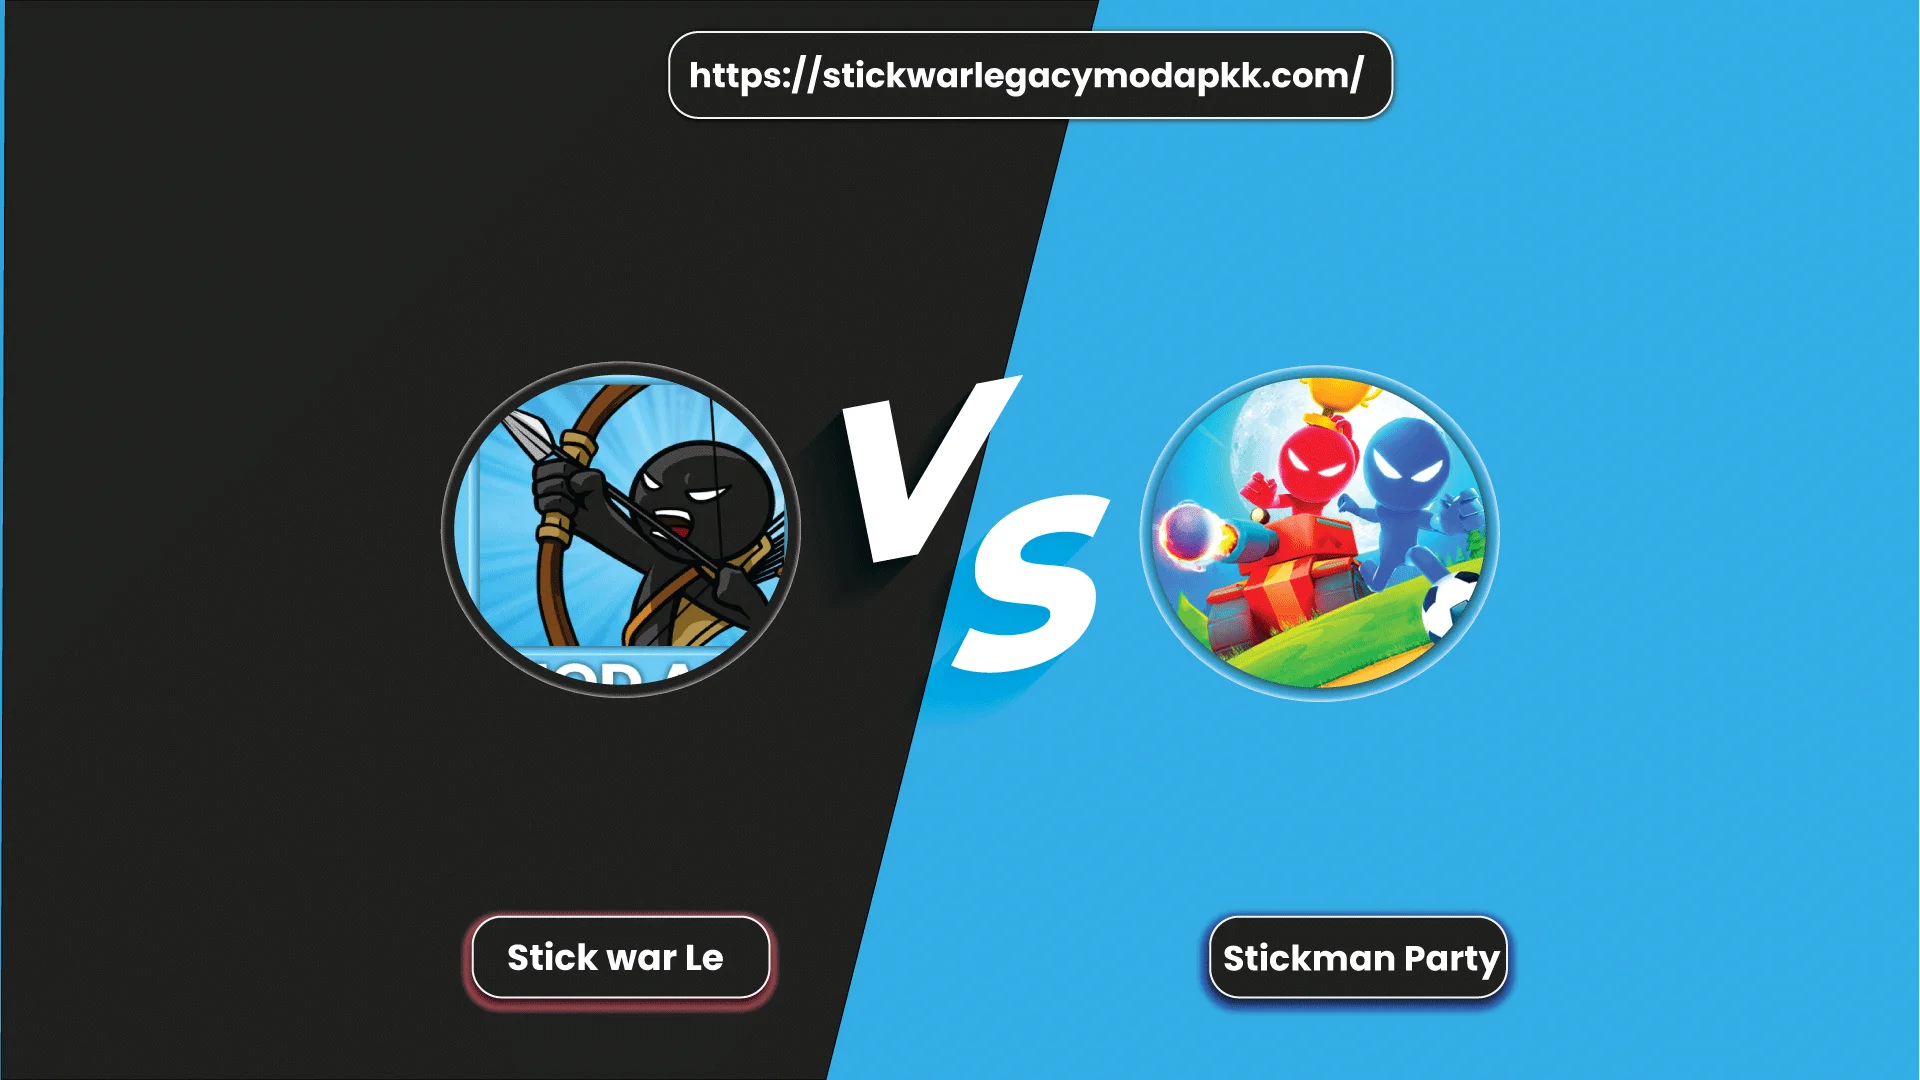 Stick war legacy vs Stickman Party